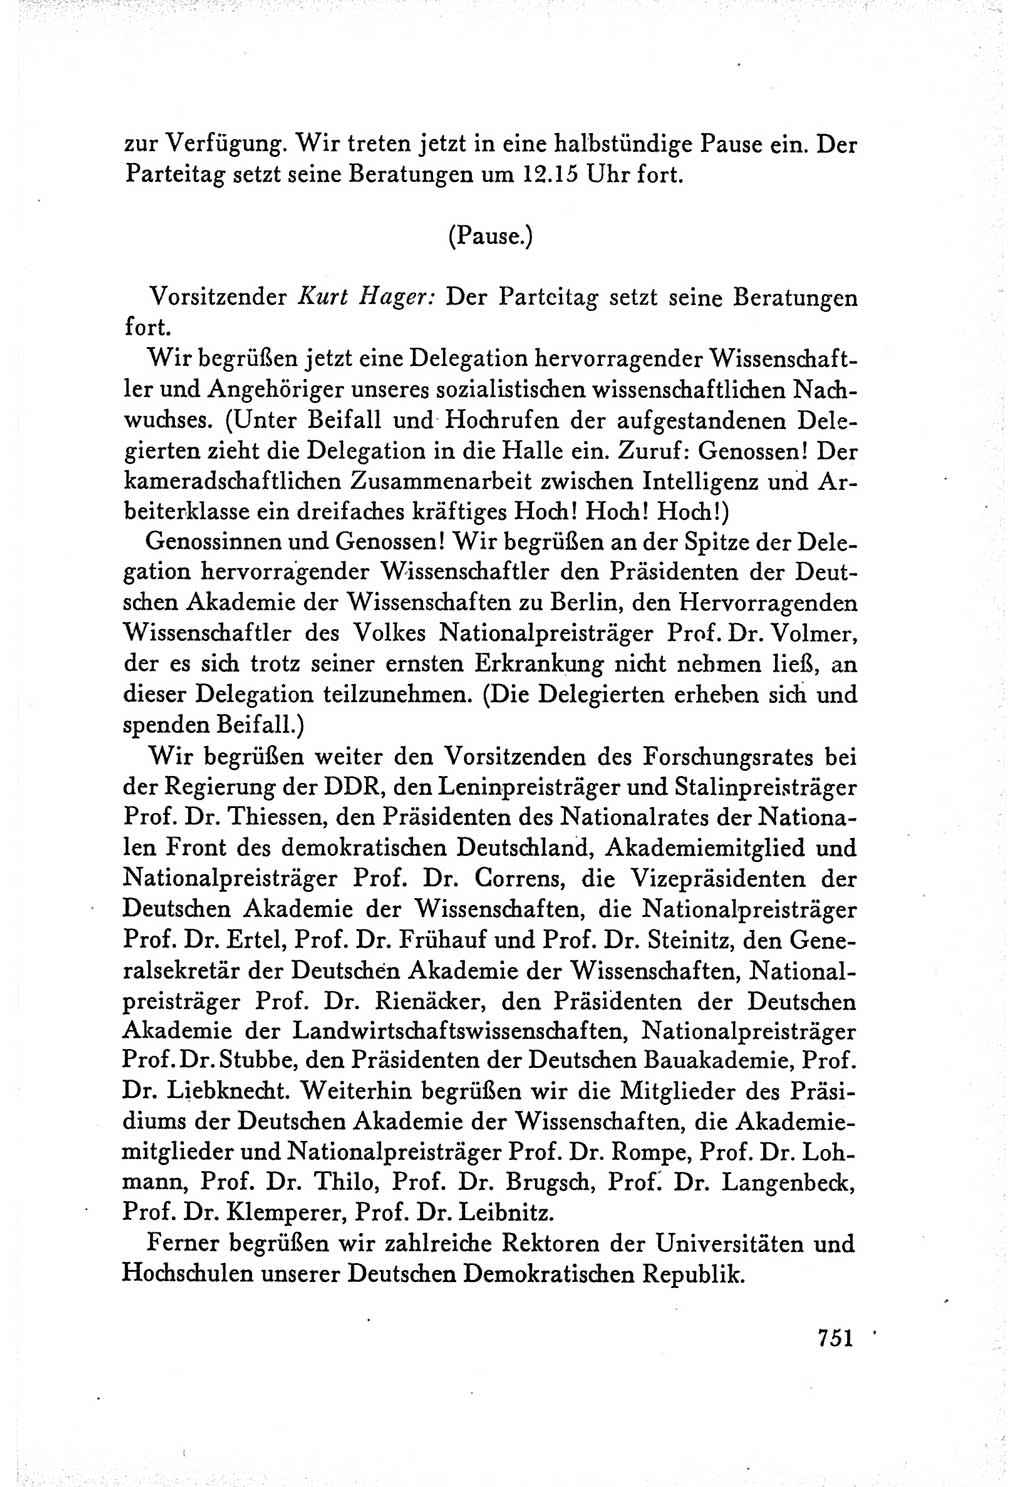 Protokoll der Verhandlungen des Ⅴ. Parteitages der Sozialistischen Einheitspartei Deutschlands (SED) [Deutsche Demokratische Republik (DDR)] 1958, Seite 751